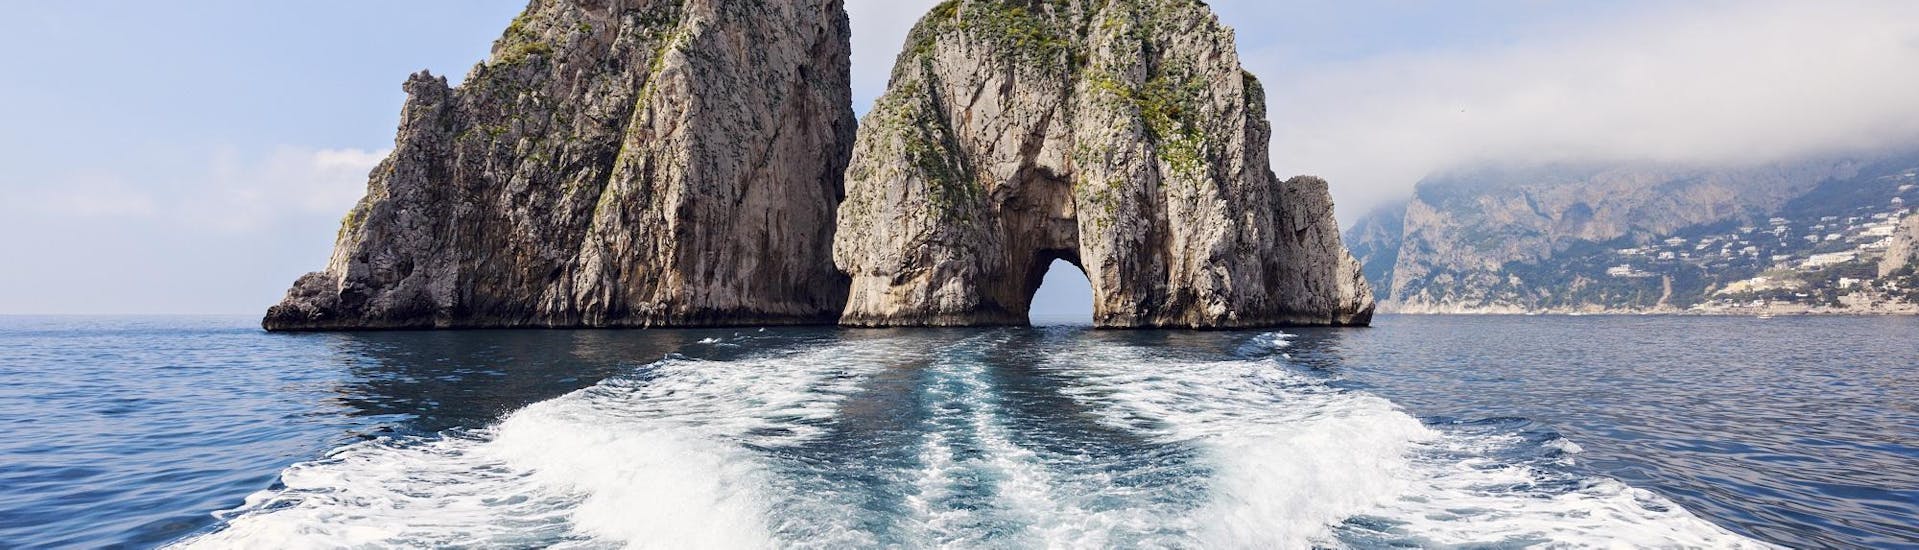 Vedere i Faraglioni di Capri da una breve distanza è uno dei vantaggi del nostro viaggio in barca da Positano a Capri.